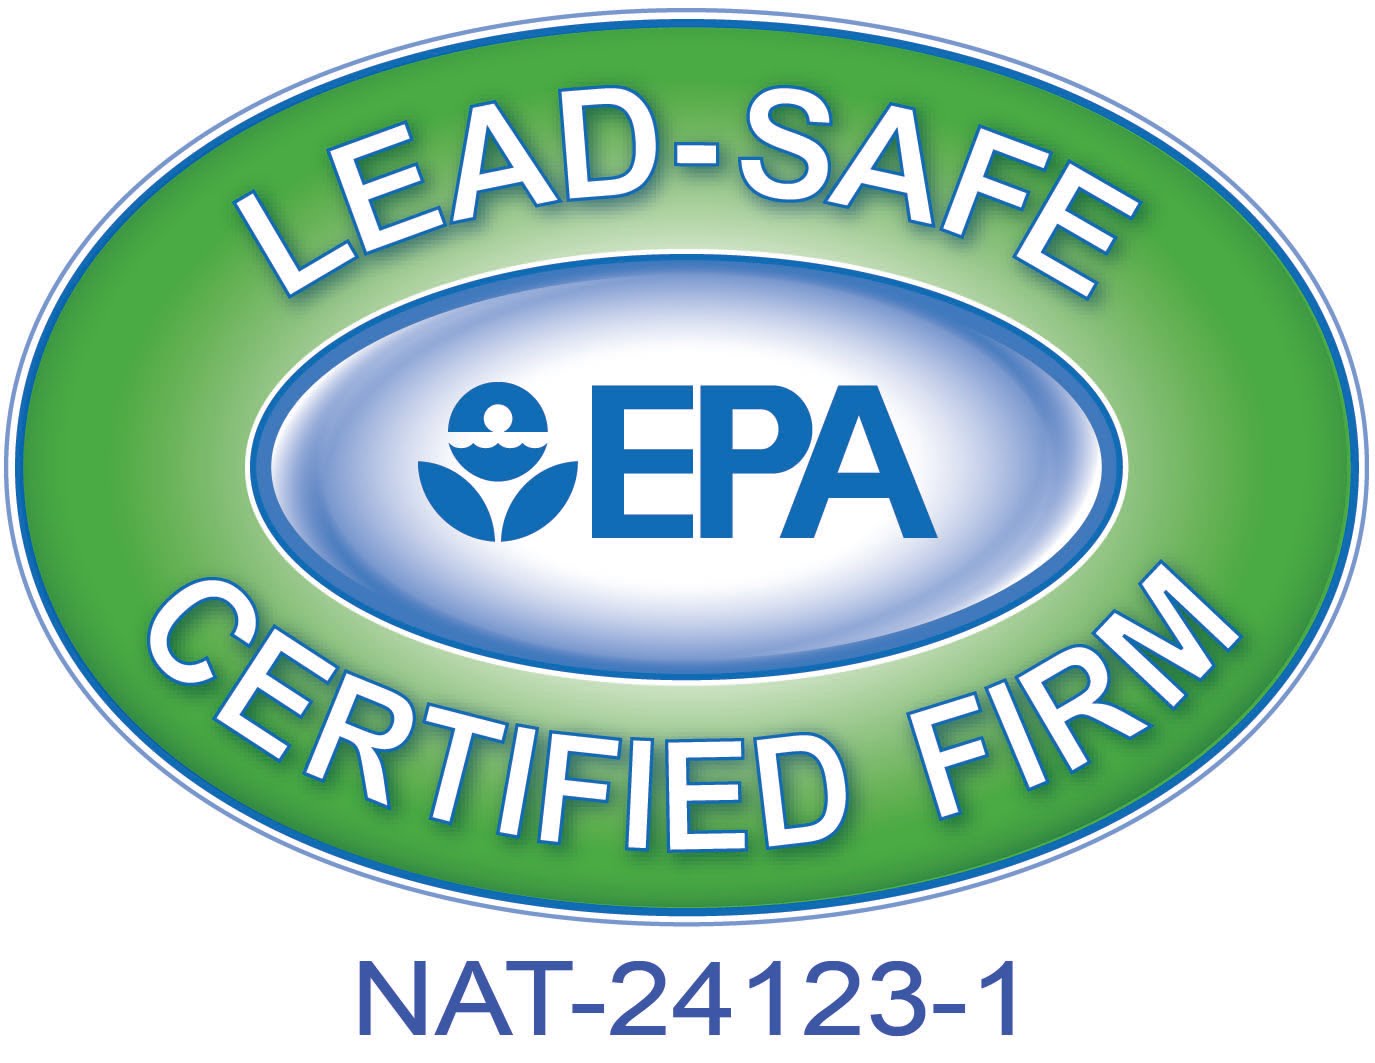 Charleston Home Remodeler Receives U.S. EPA Lead-Safe Certification